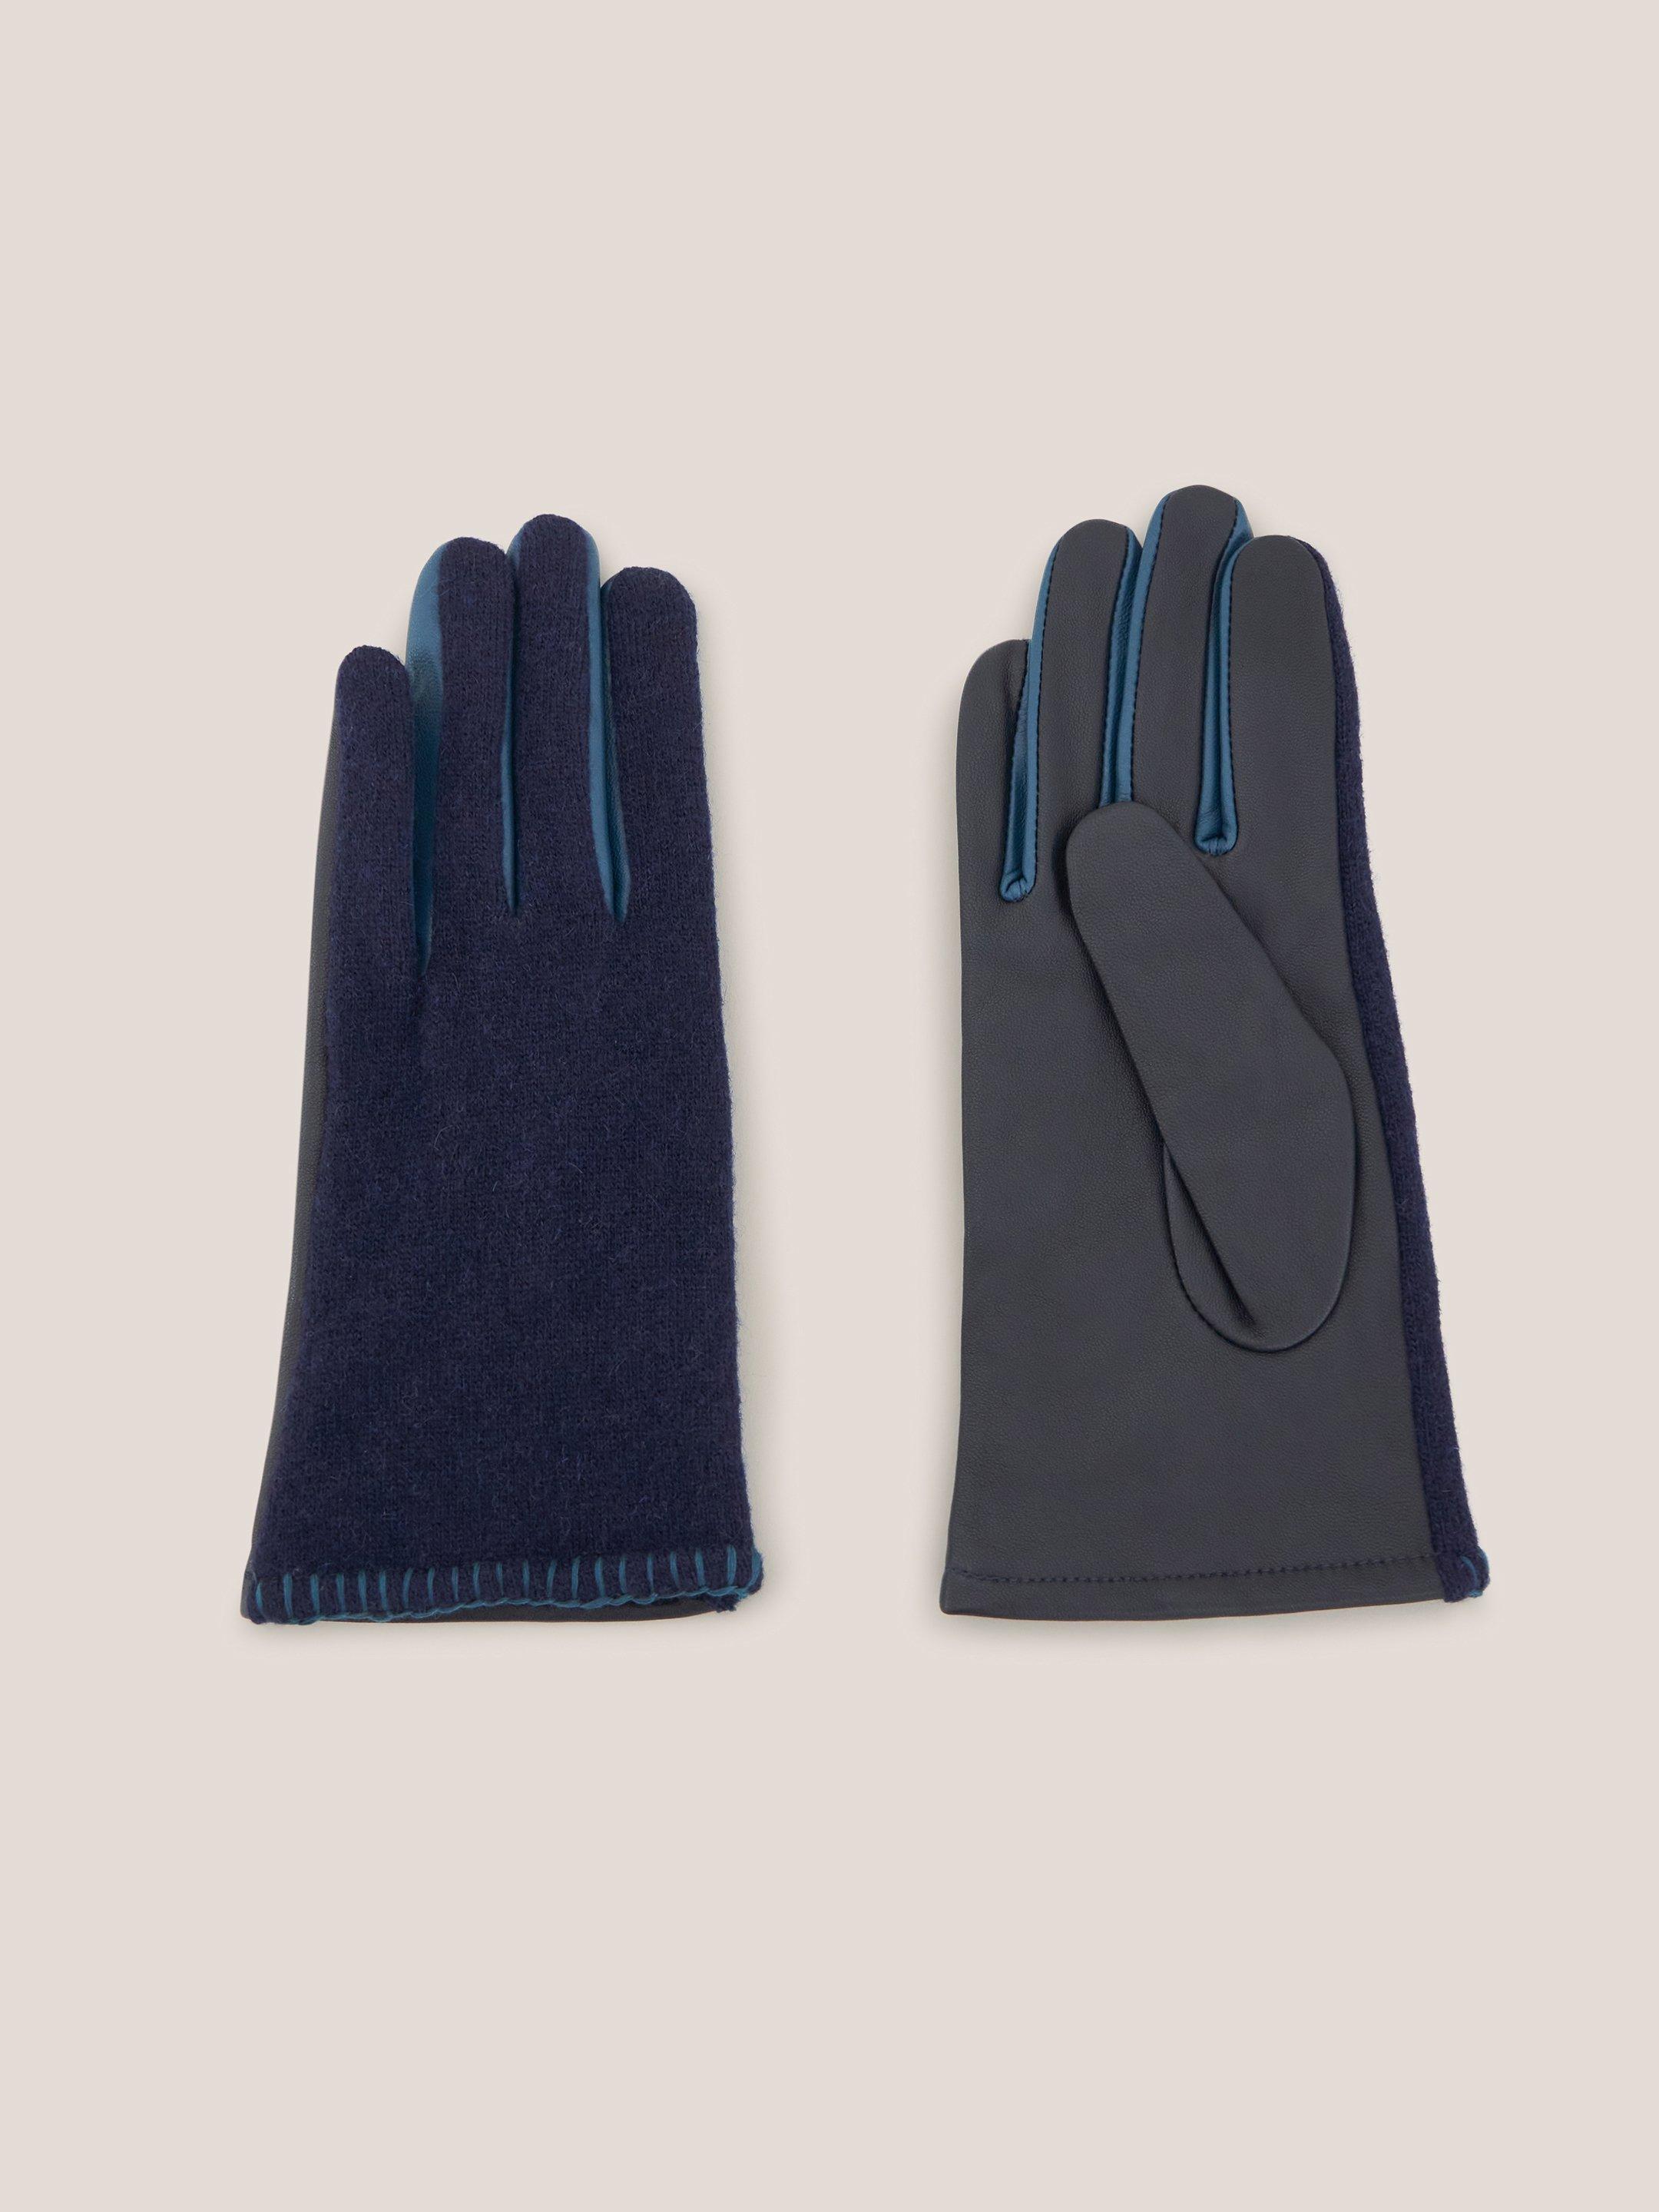 Lucie Leather Glove in DARK NAVY - FLAT FRONT